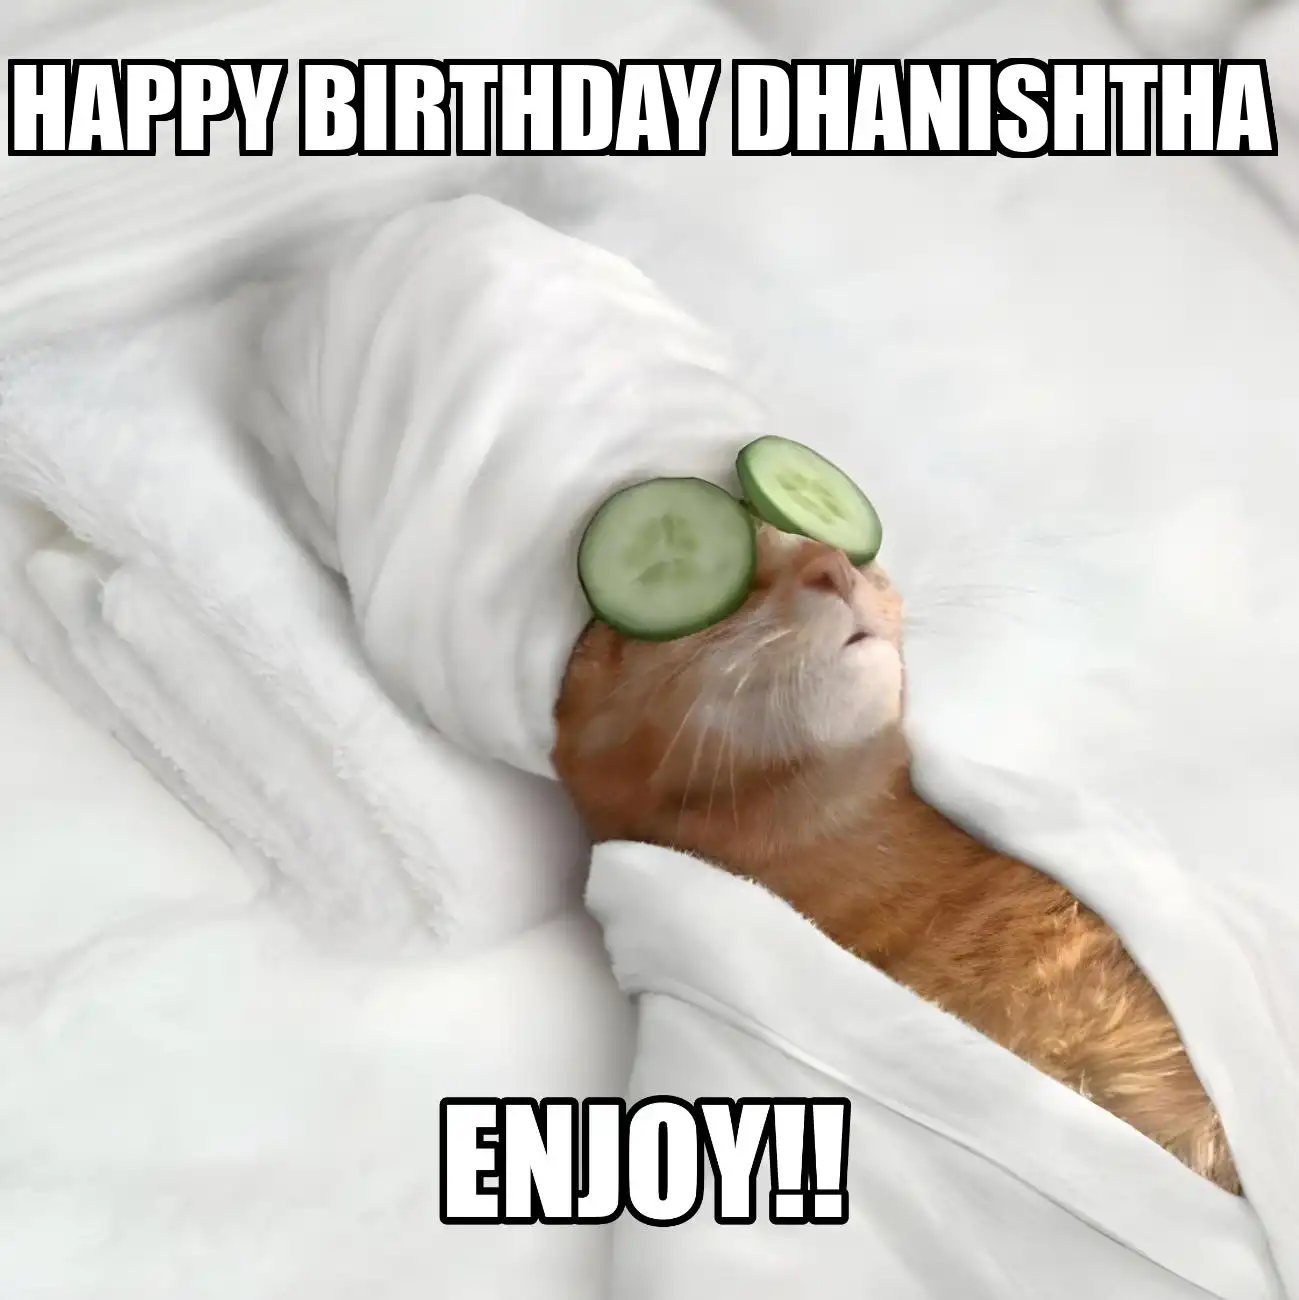 Happy Birthday Dhanishtha Enjoy Cat Meme